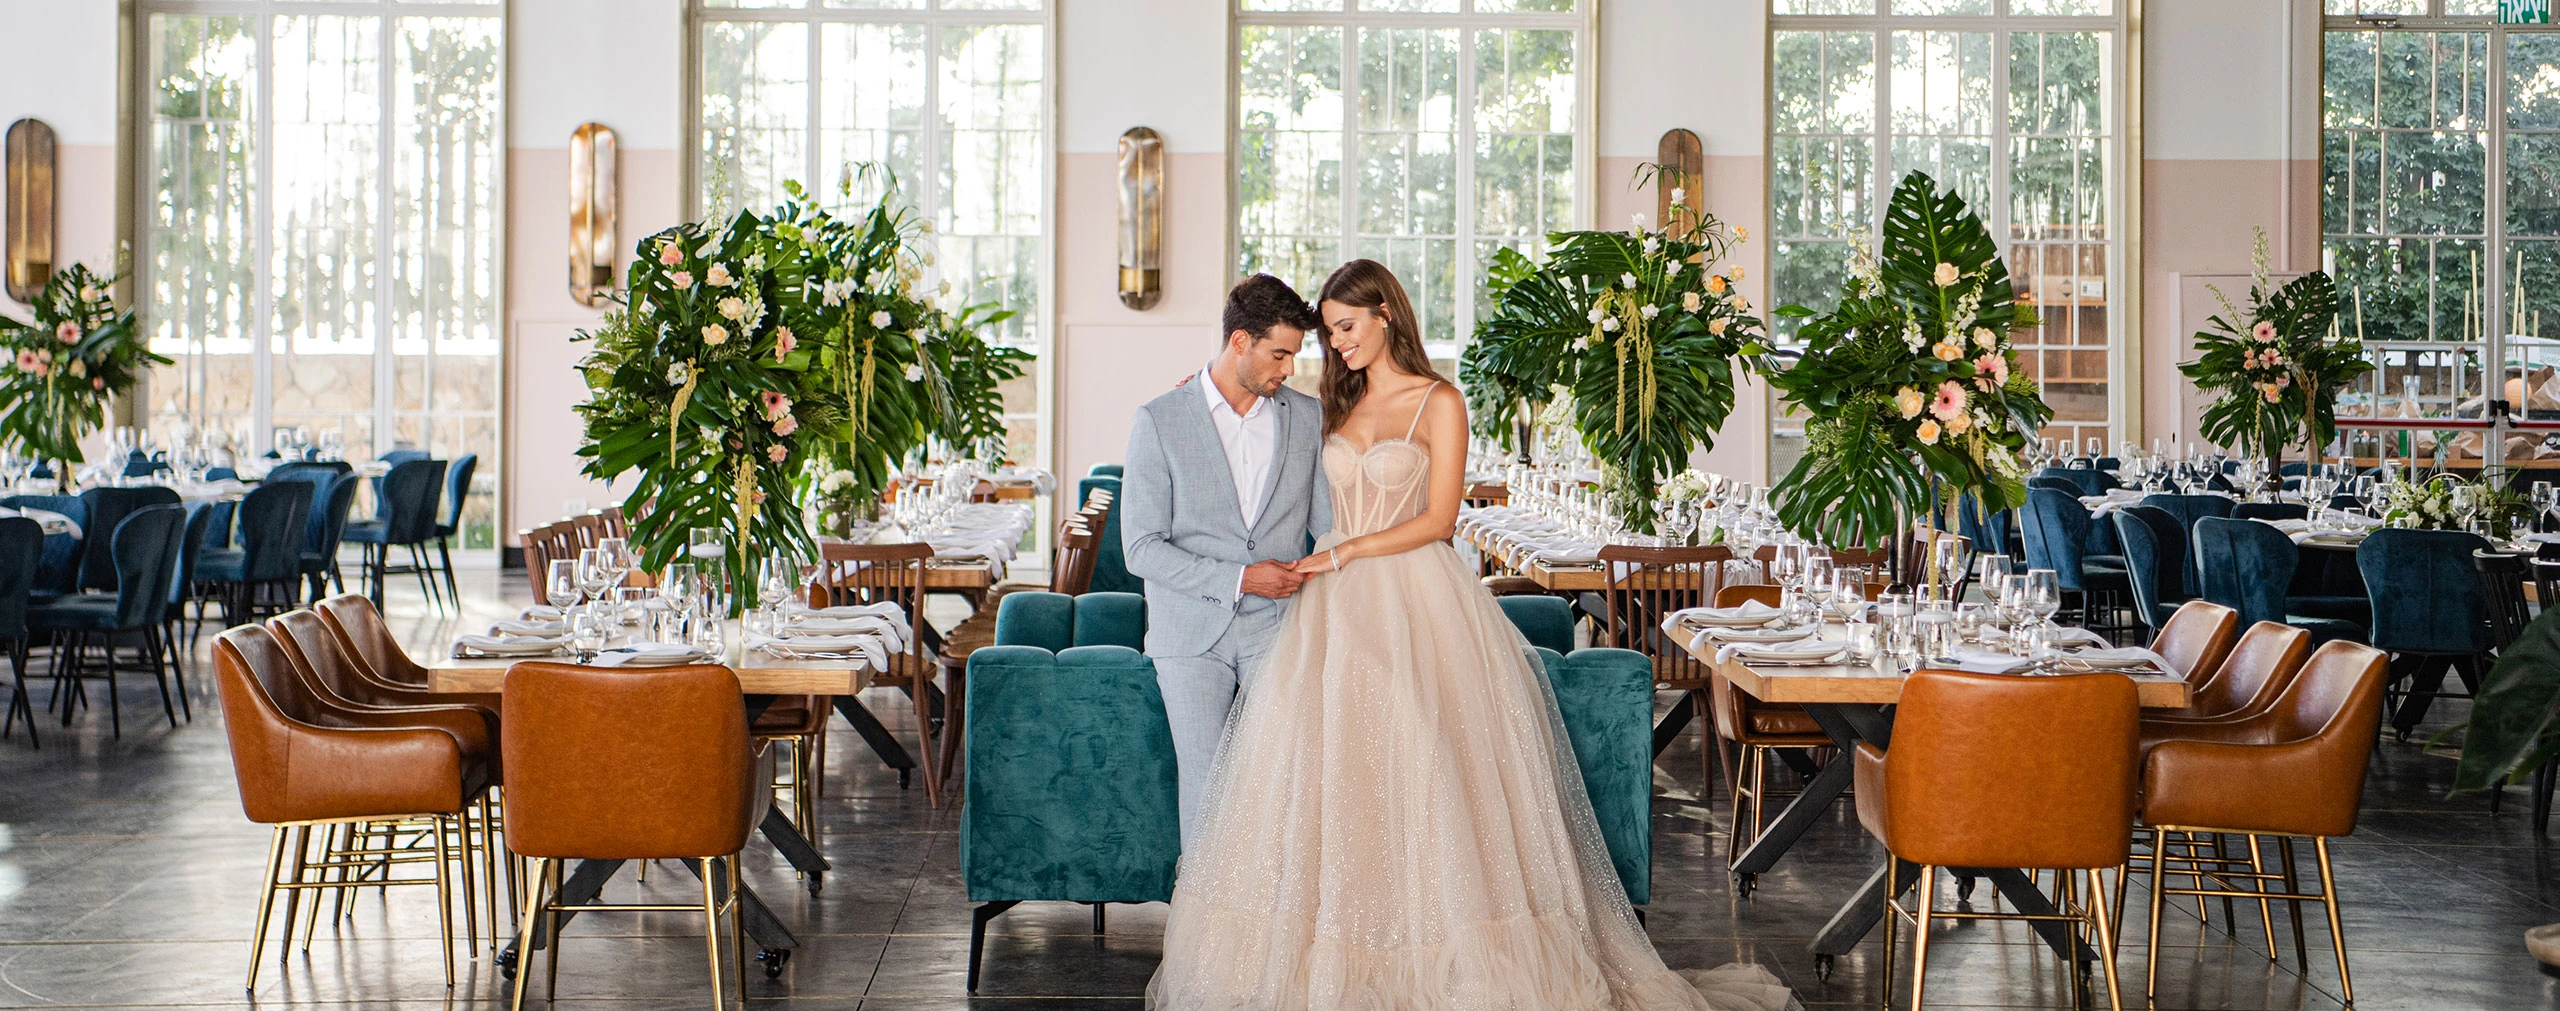 WedReviews – גני אירועים ומקומות לחתונה | המלצות אמיתיות על ספקים לחתונה